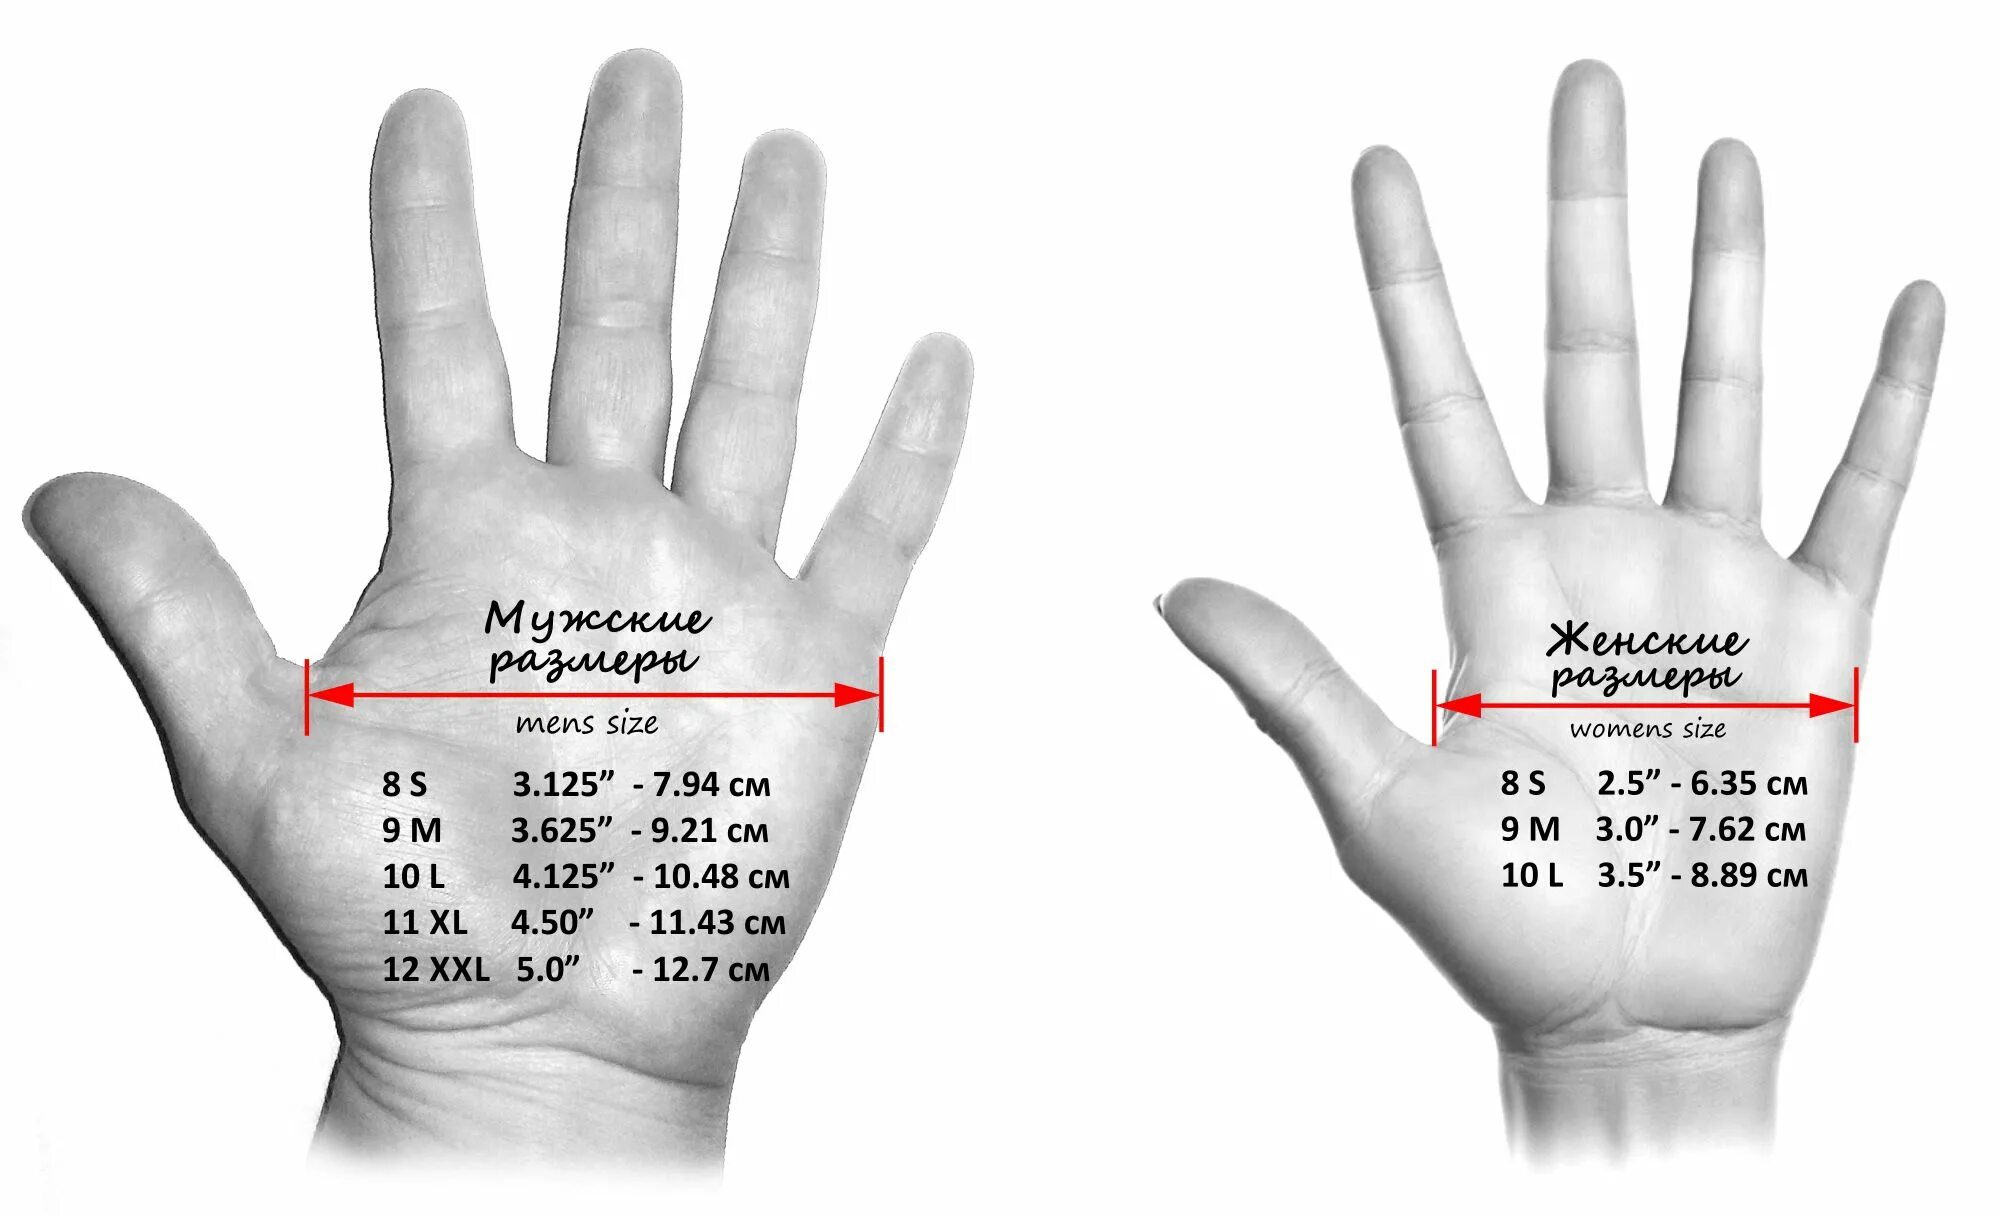 Как измерить руку для перчаток. Как мерить размер перчаток. Как замерить кисть руки для перчаток. Как правильно измерить обхват ладони для размера перчатки. Как определить размер ладони для перчаток у женщин.